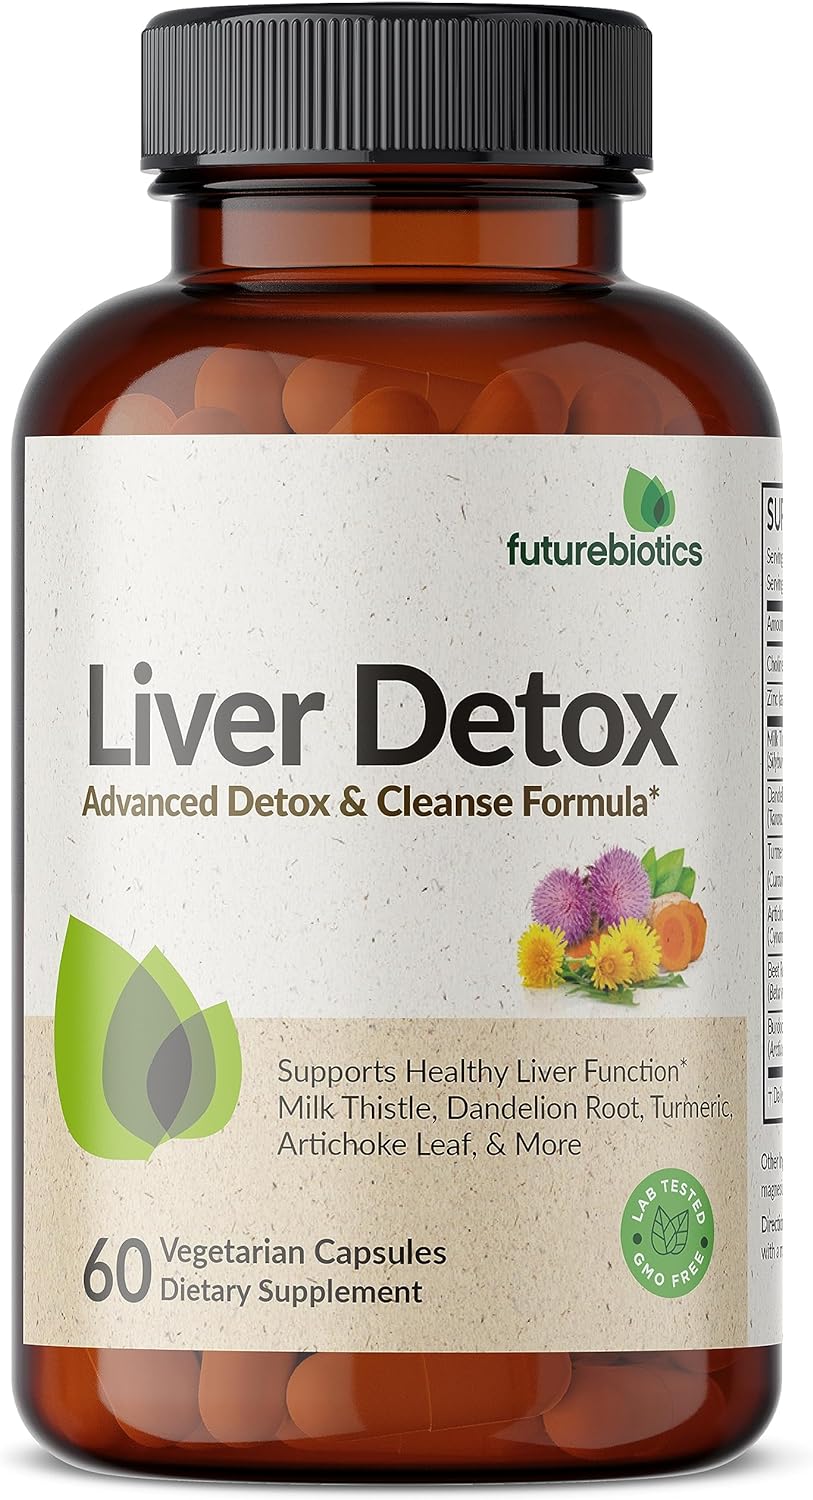 Futurebiotics Liver Detox Advanced Detox & Cleanse Formula Supports He